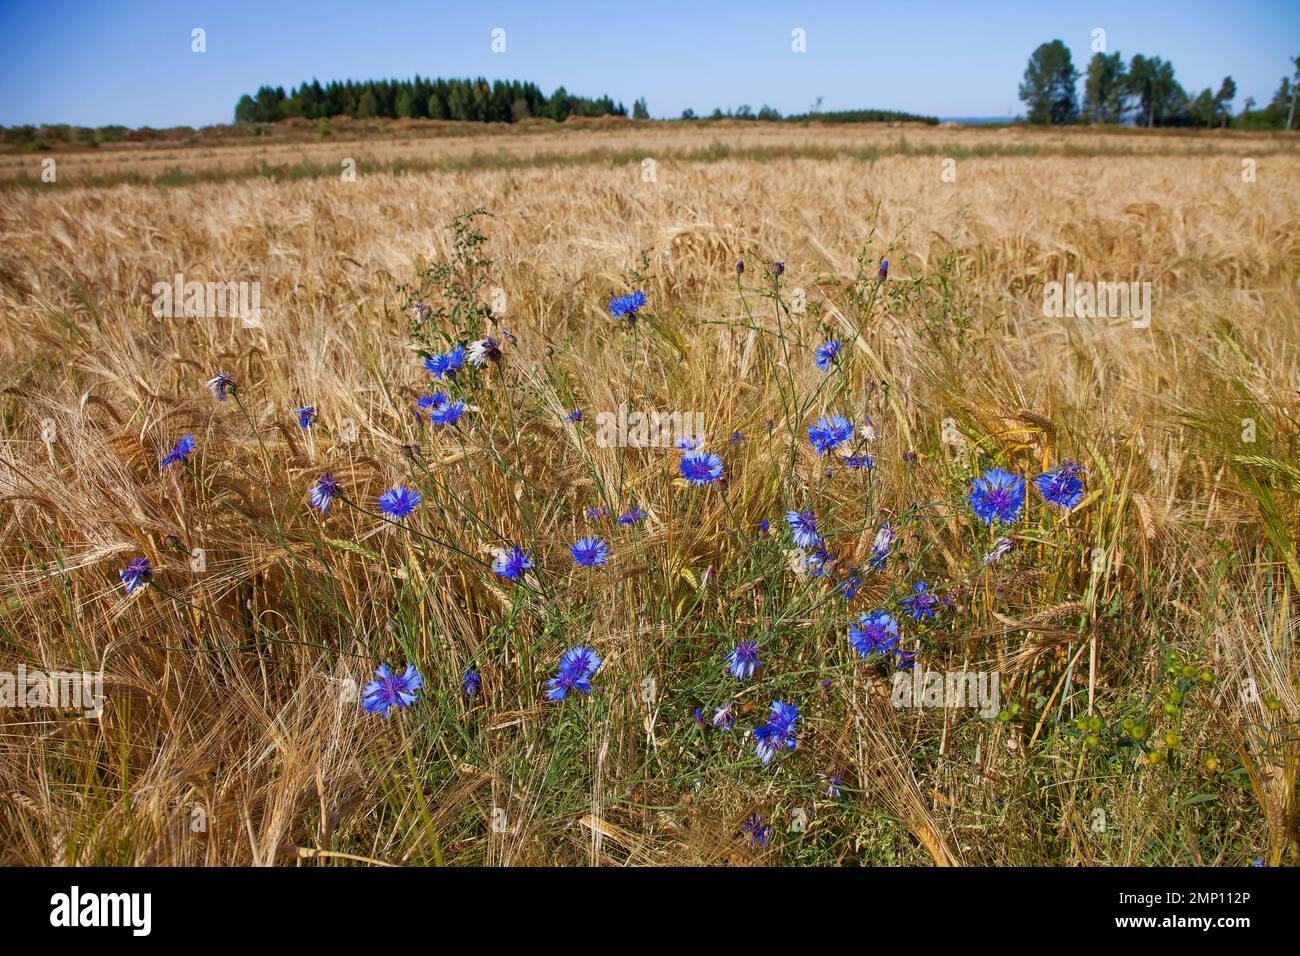 Schweden, Wiesenfeld im Süden mit dem Getreide Centaurea cyanus, gemeinhin bekannt als Kornblume, Junggesellen-Knopf, Bluebottle, Boutonniere f Stockfoto